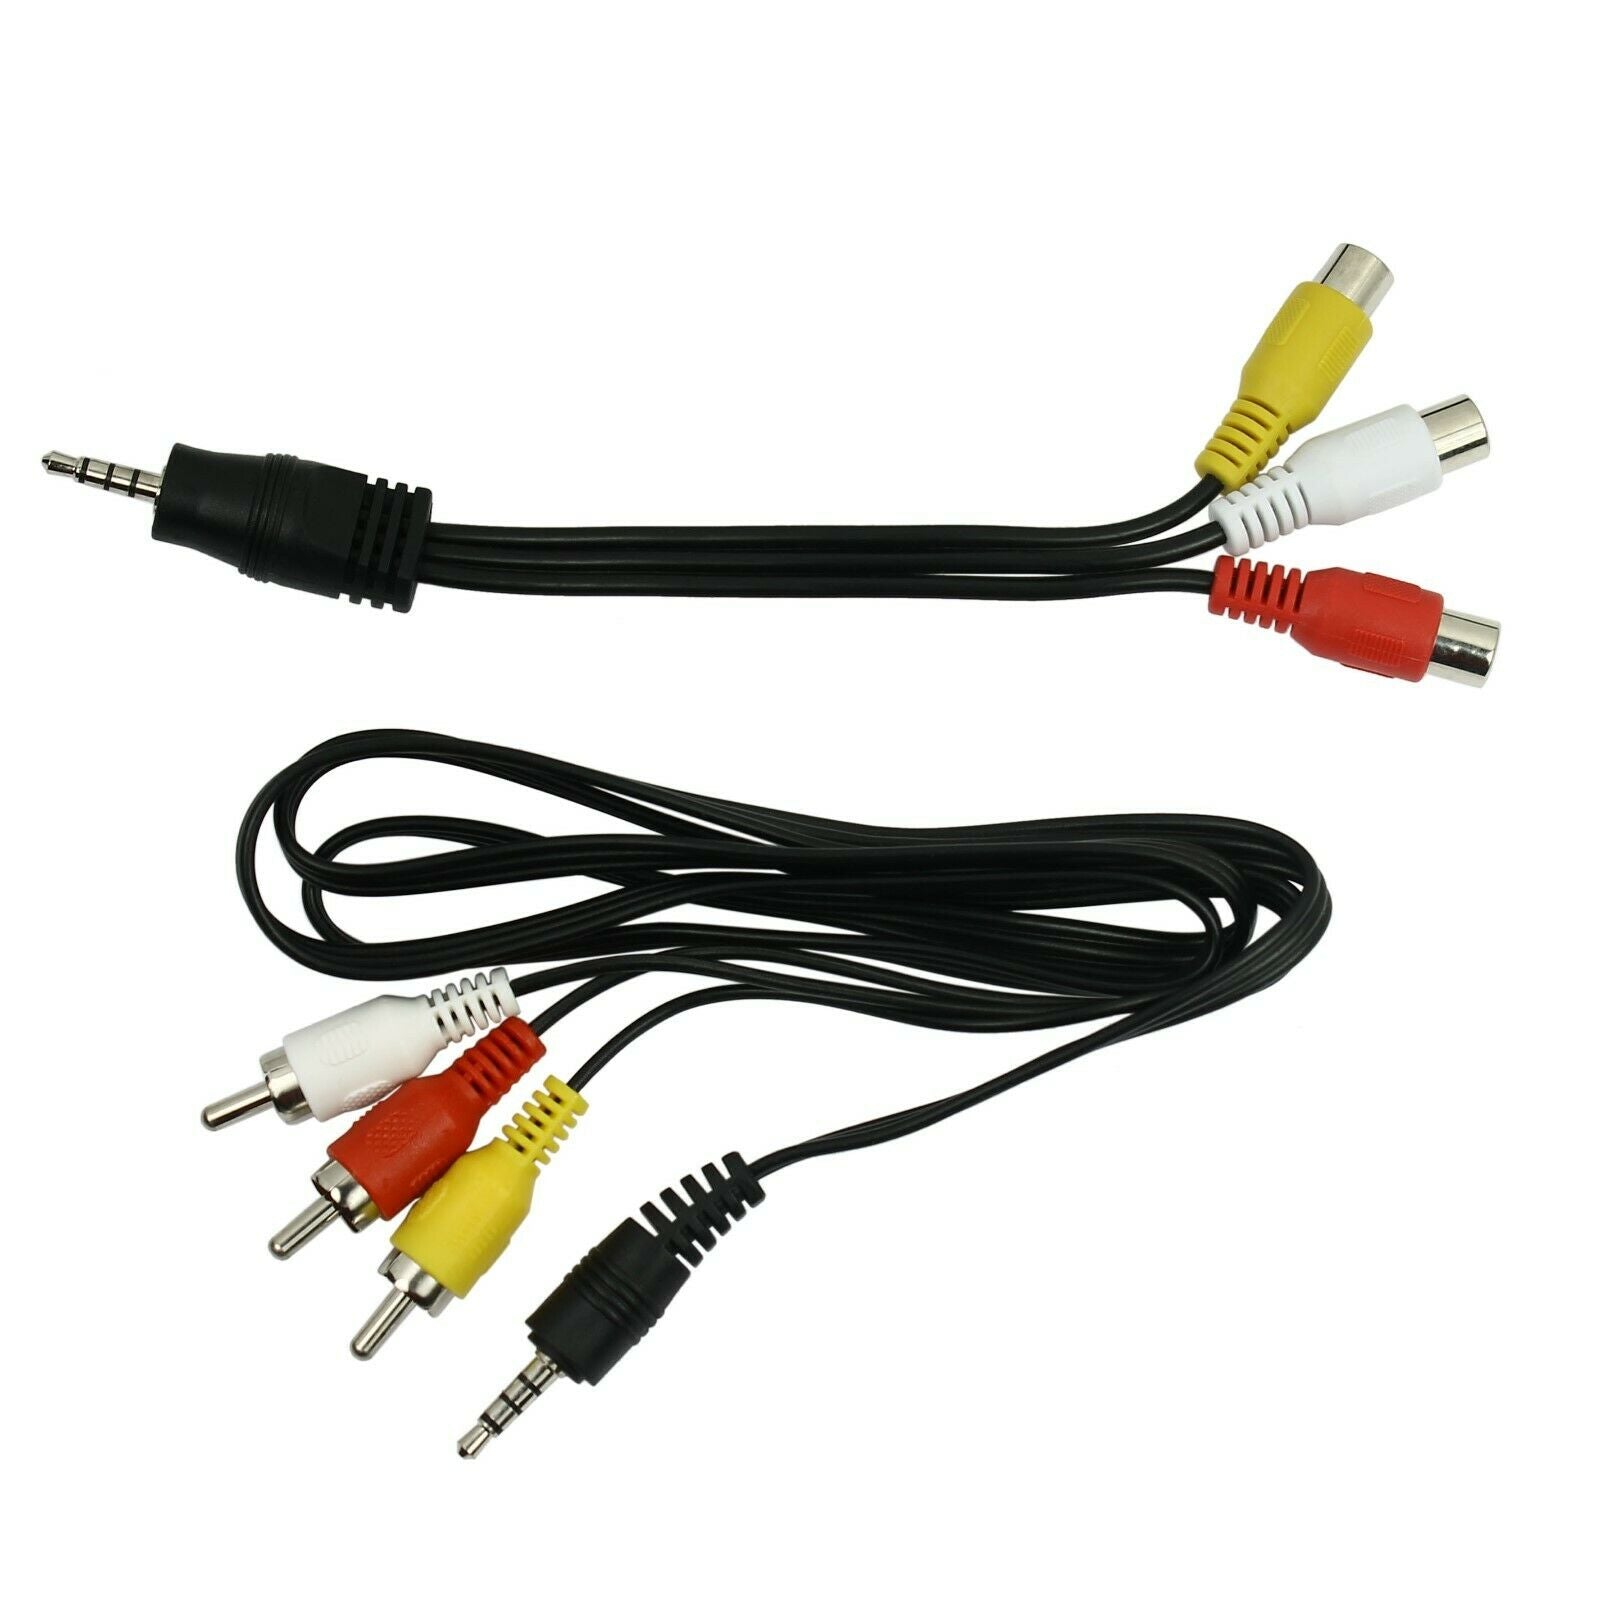 Câble RCA composite vidéo et audio Jaune rouge blanc 1,5m